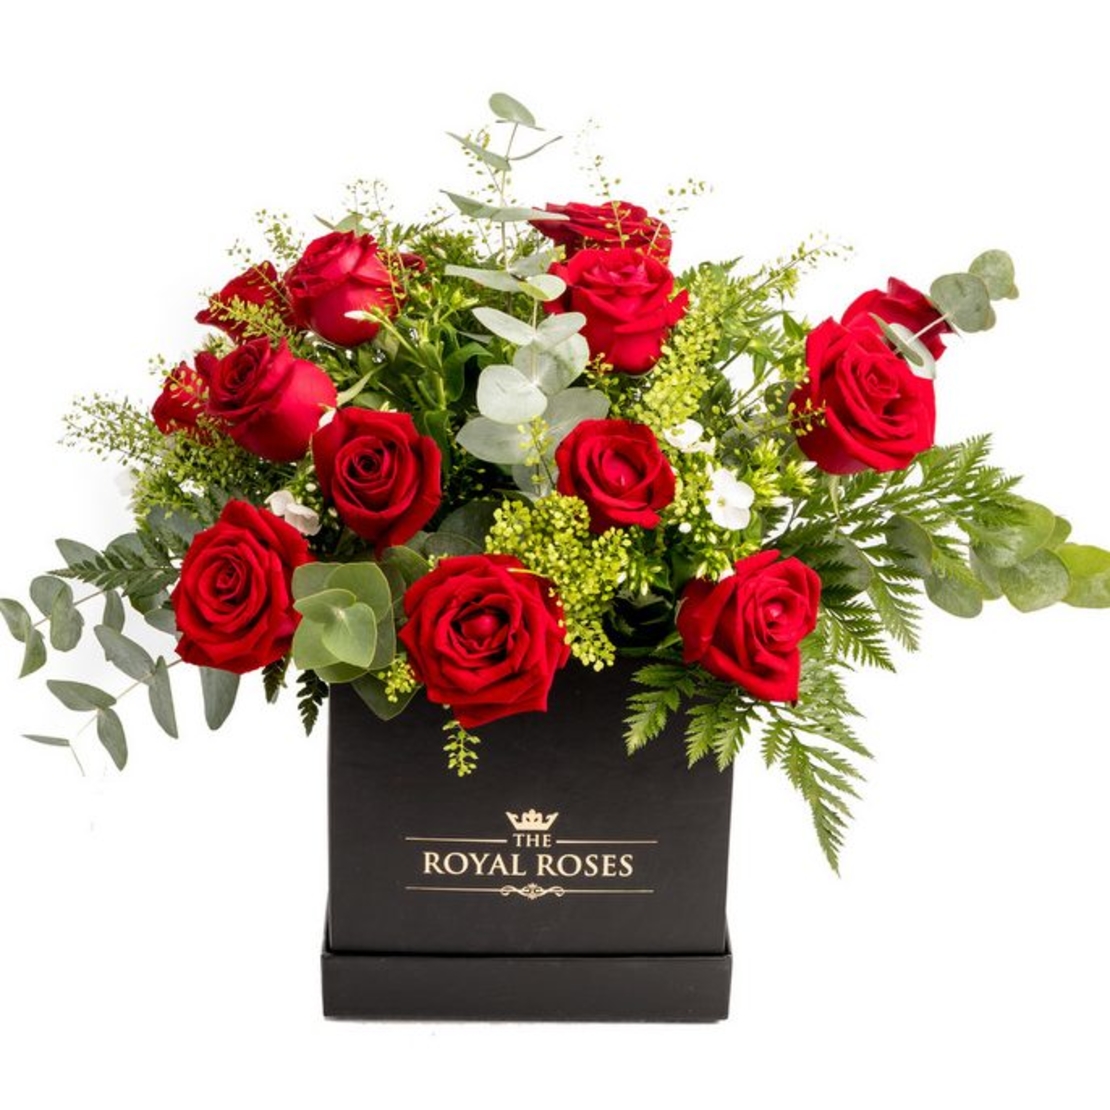 Romantic Flower Arrangement in a Box